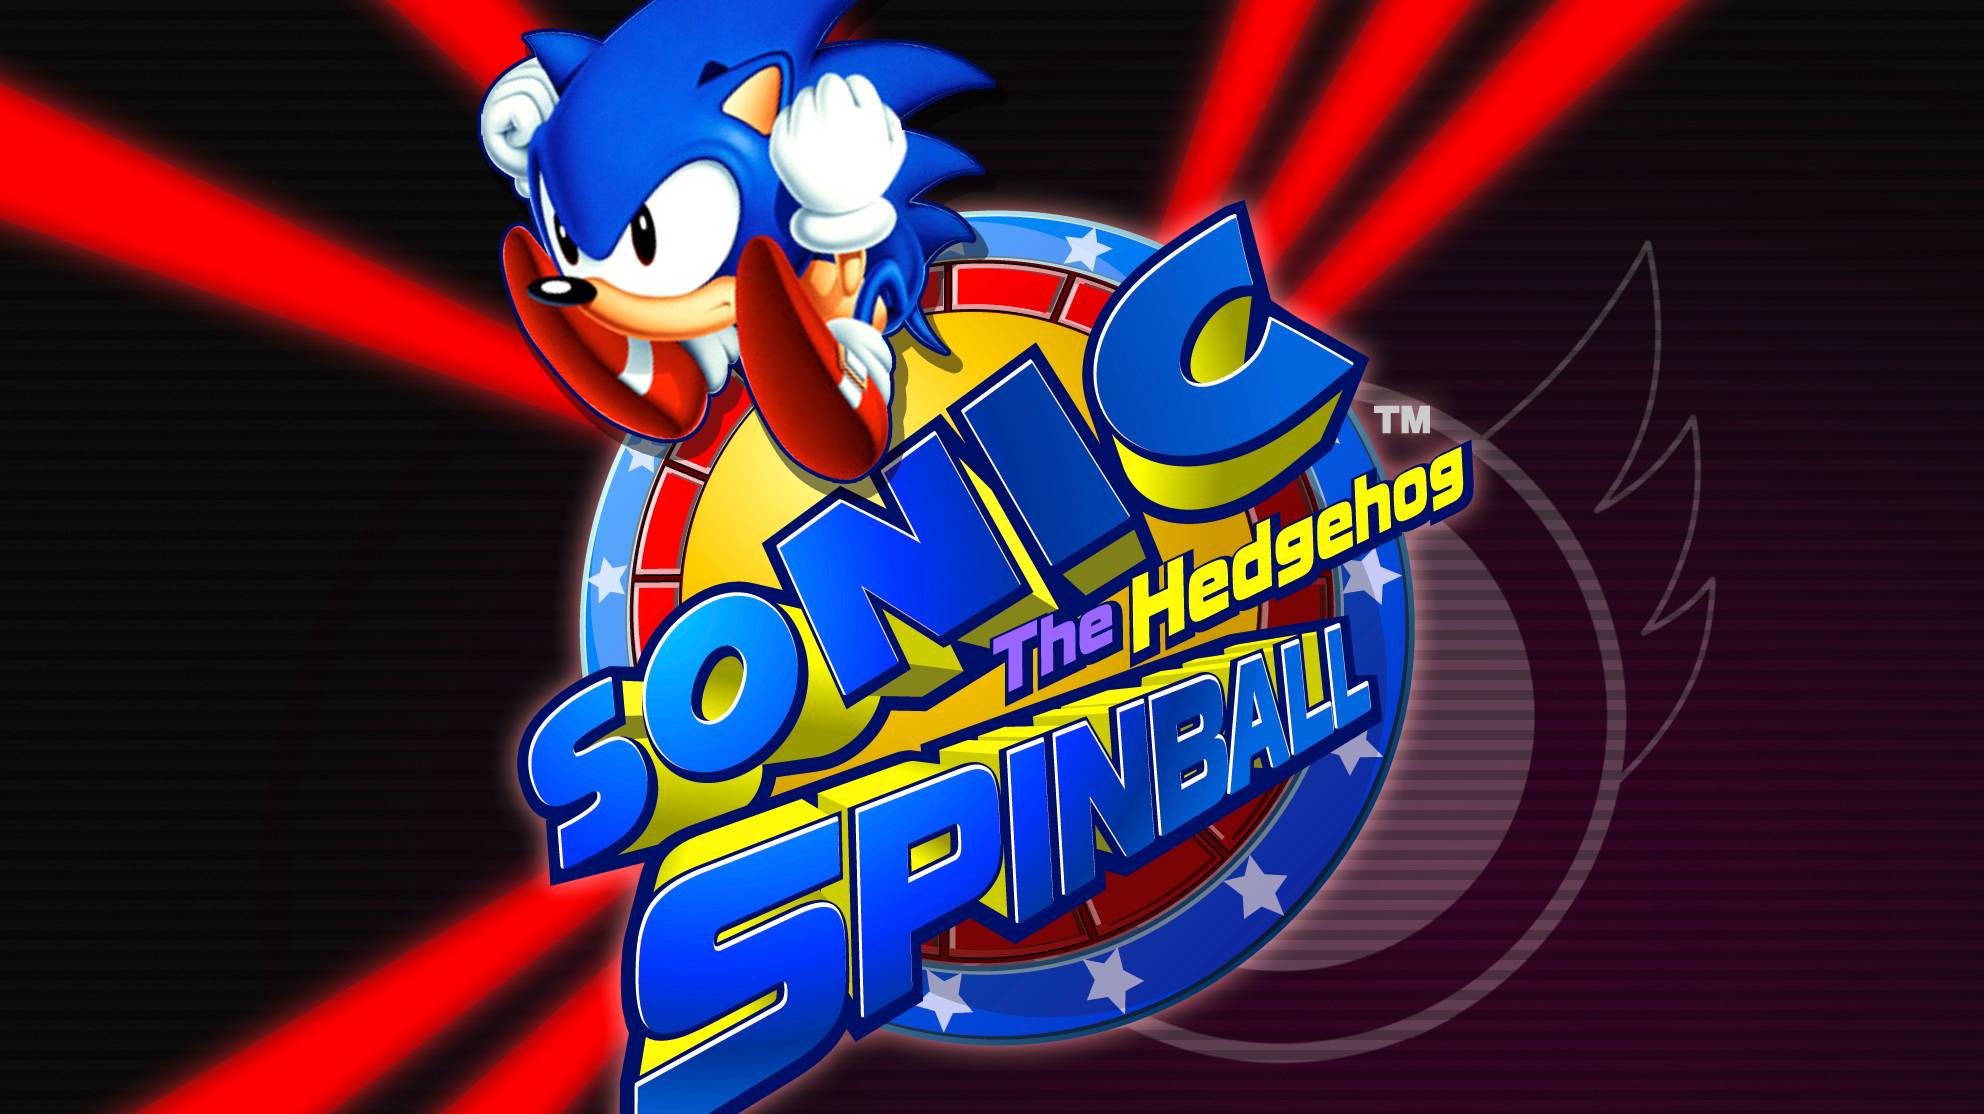 Sonic the Hedgehog Spinball - Sega Genesis - Полное прохождение без комментариев (Longplay)